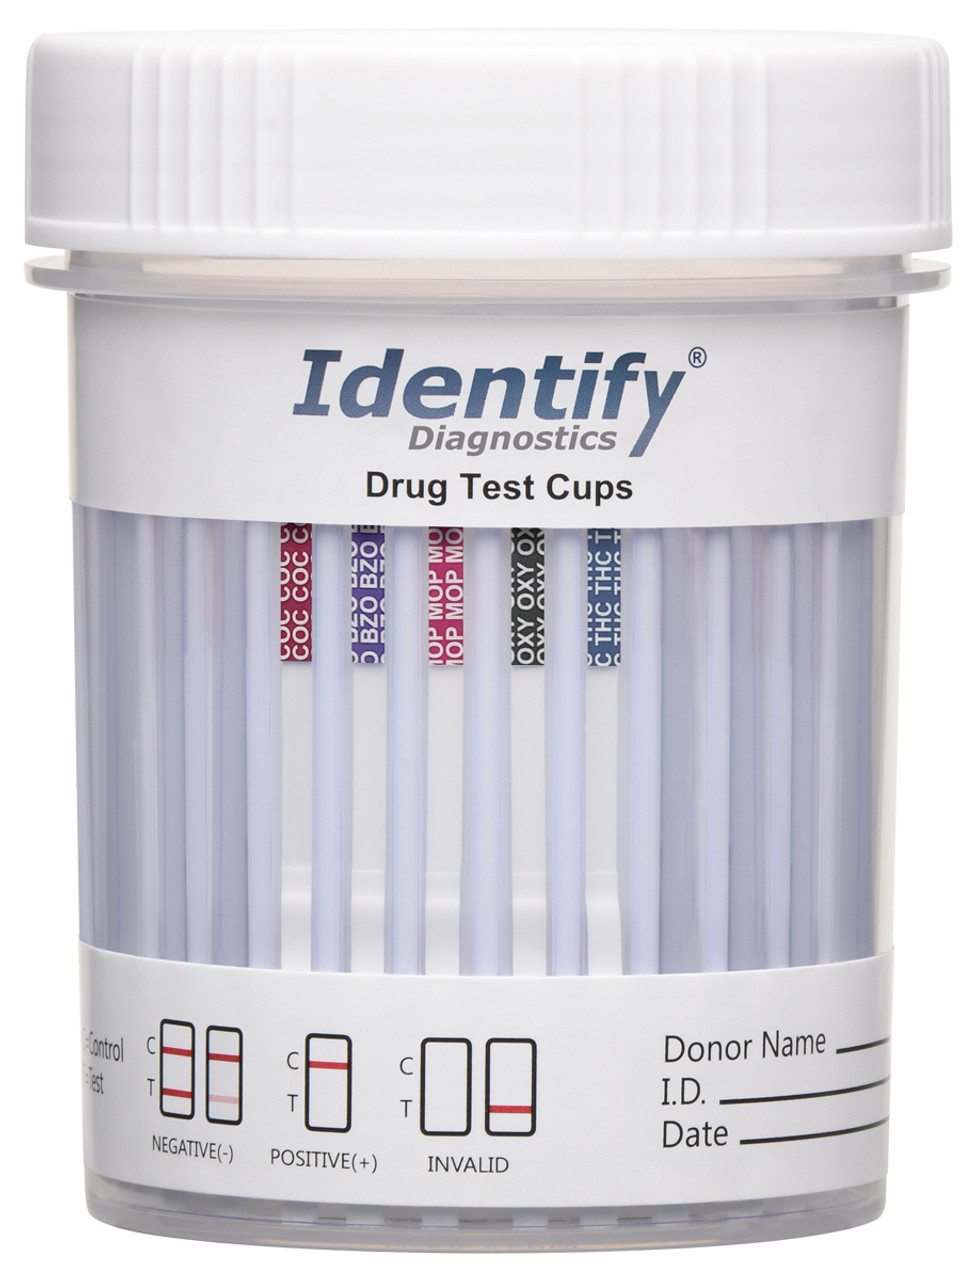 motor Oh jee Beoordeling 5 Panel Drug Test Cup Identify Diagnostics | Drug Testing Kits CLIA Waived